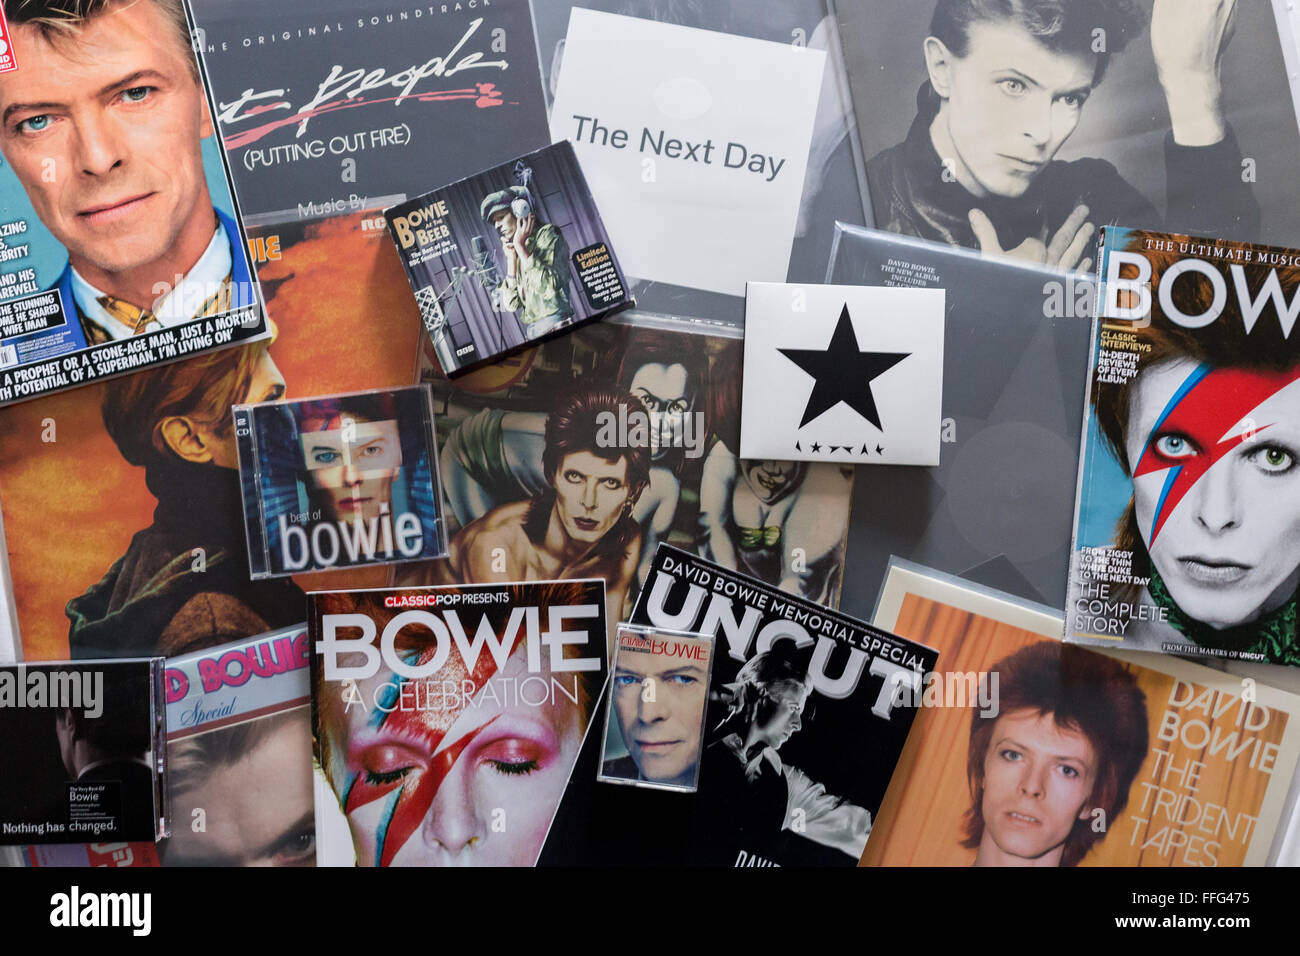 David Bowie - Sammlung von Alben Vinyl, CDs und Zeitschriften Erinnerungsstücke mit David Bowies Bild Stockfoto